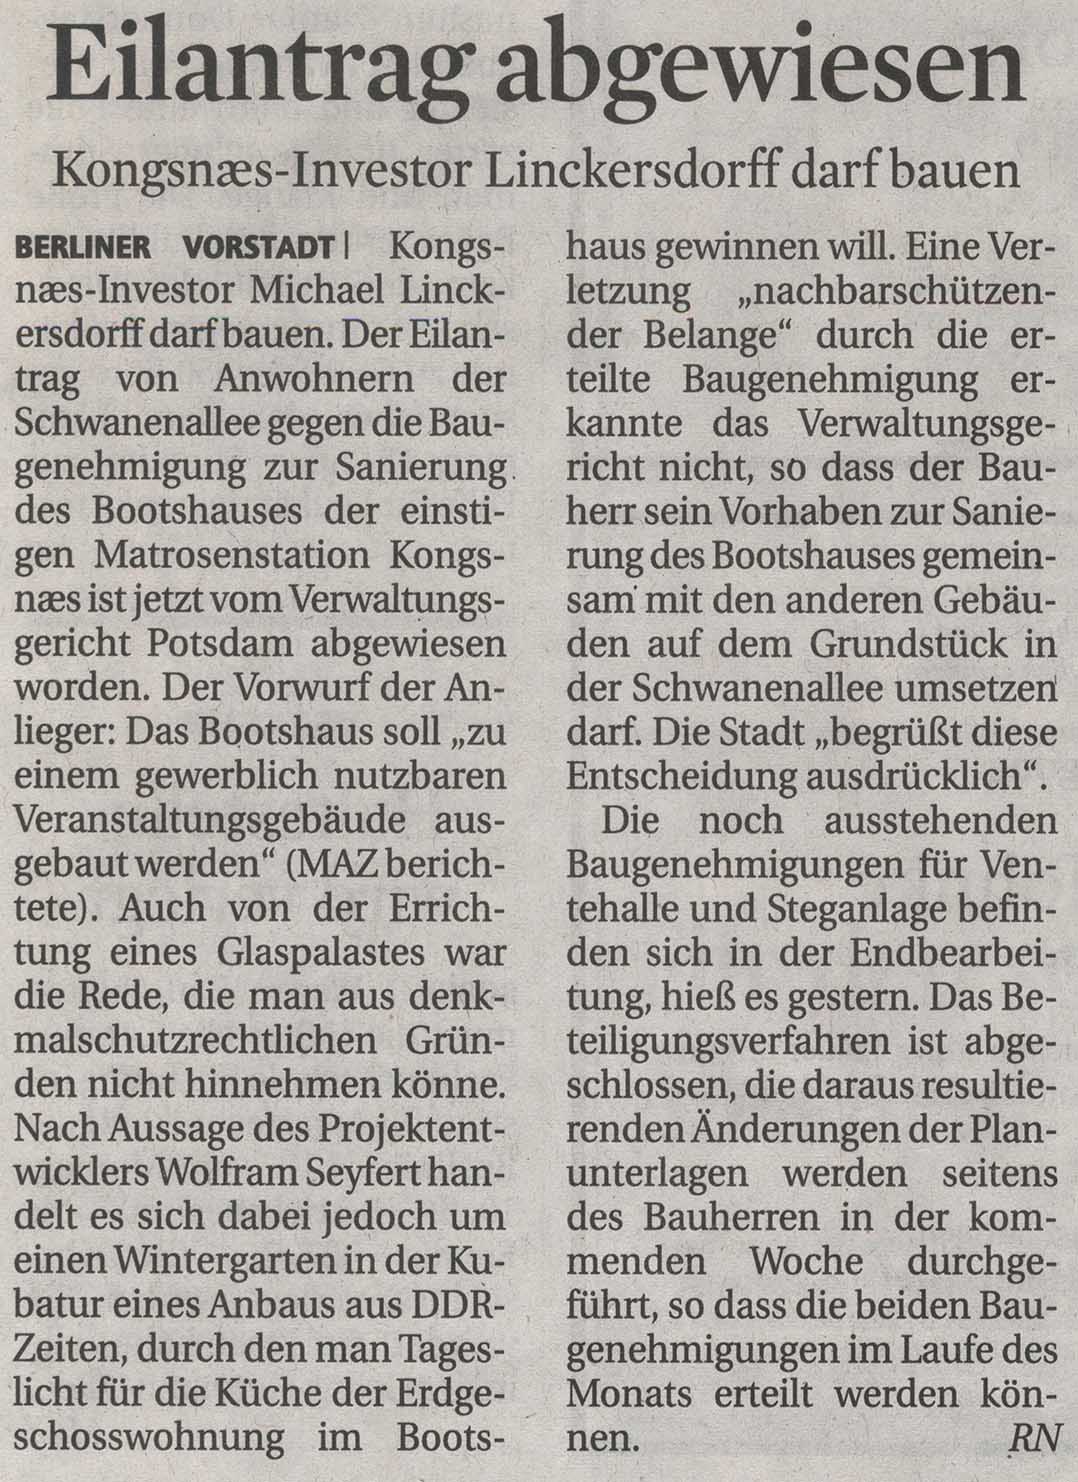 Mrkische Allgemeine Zeitung - 10.06.2012